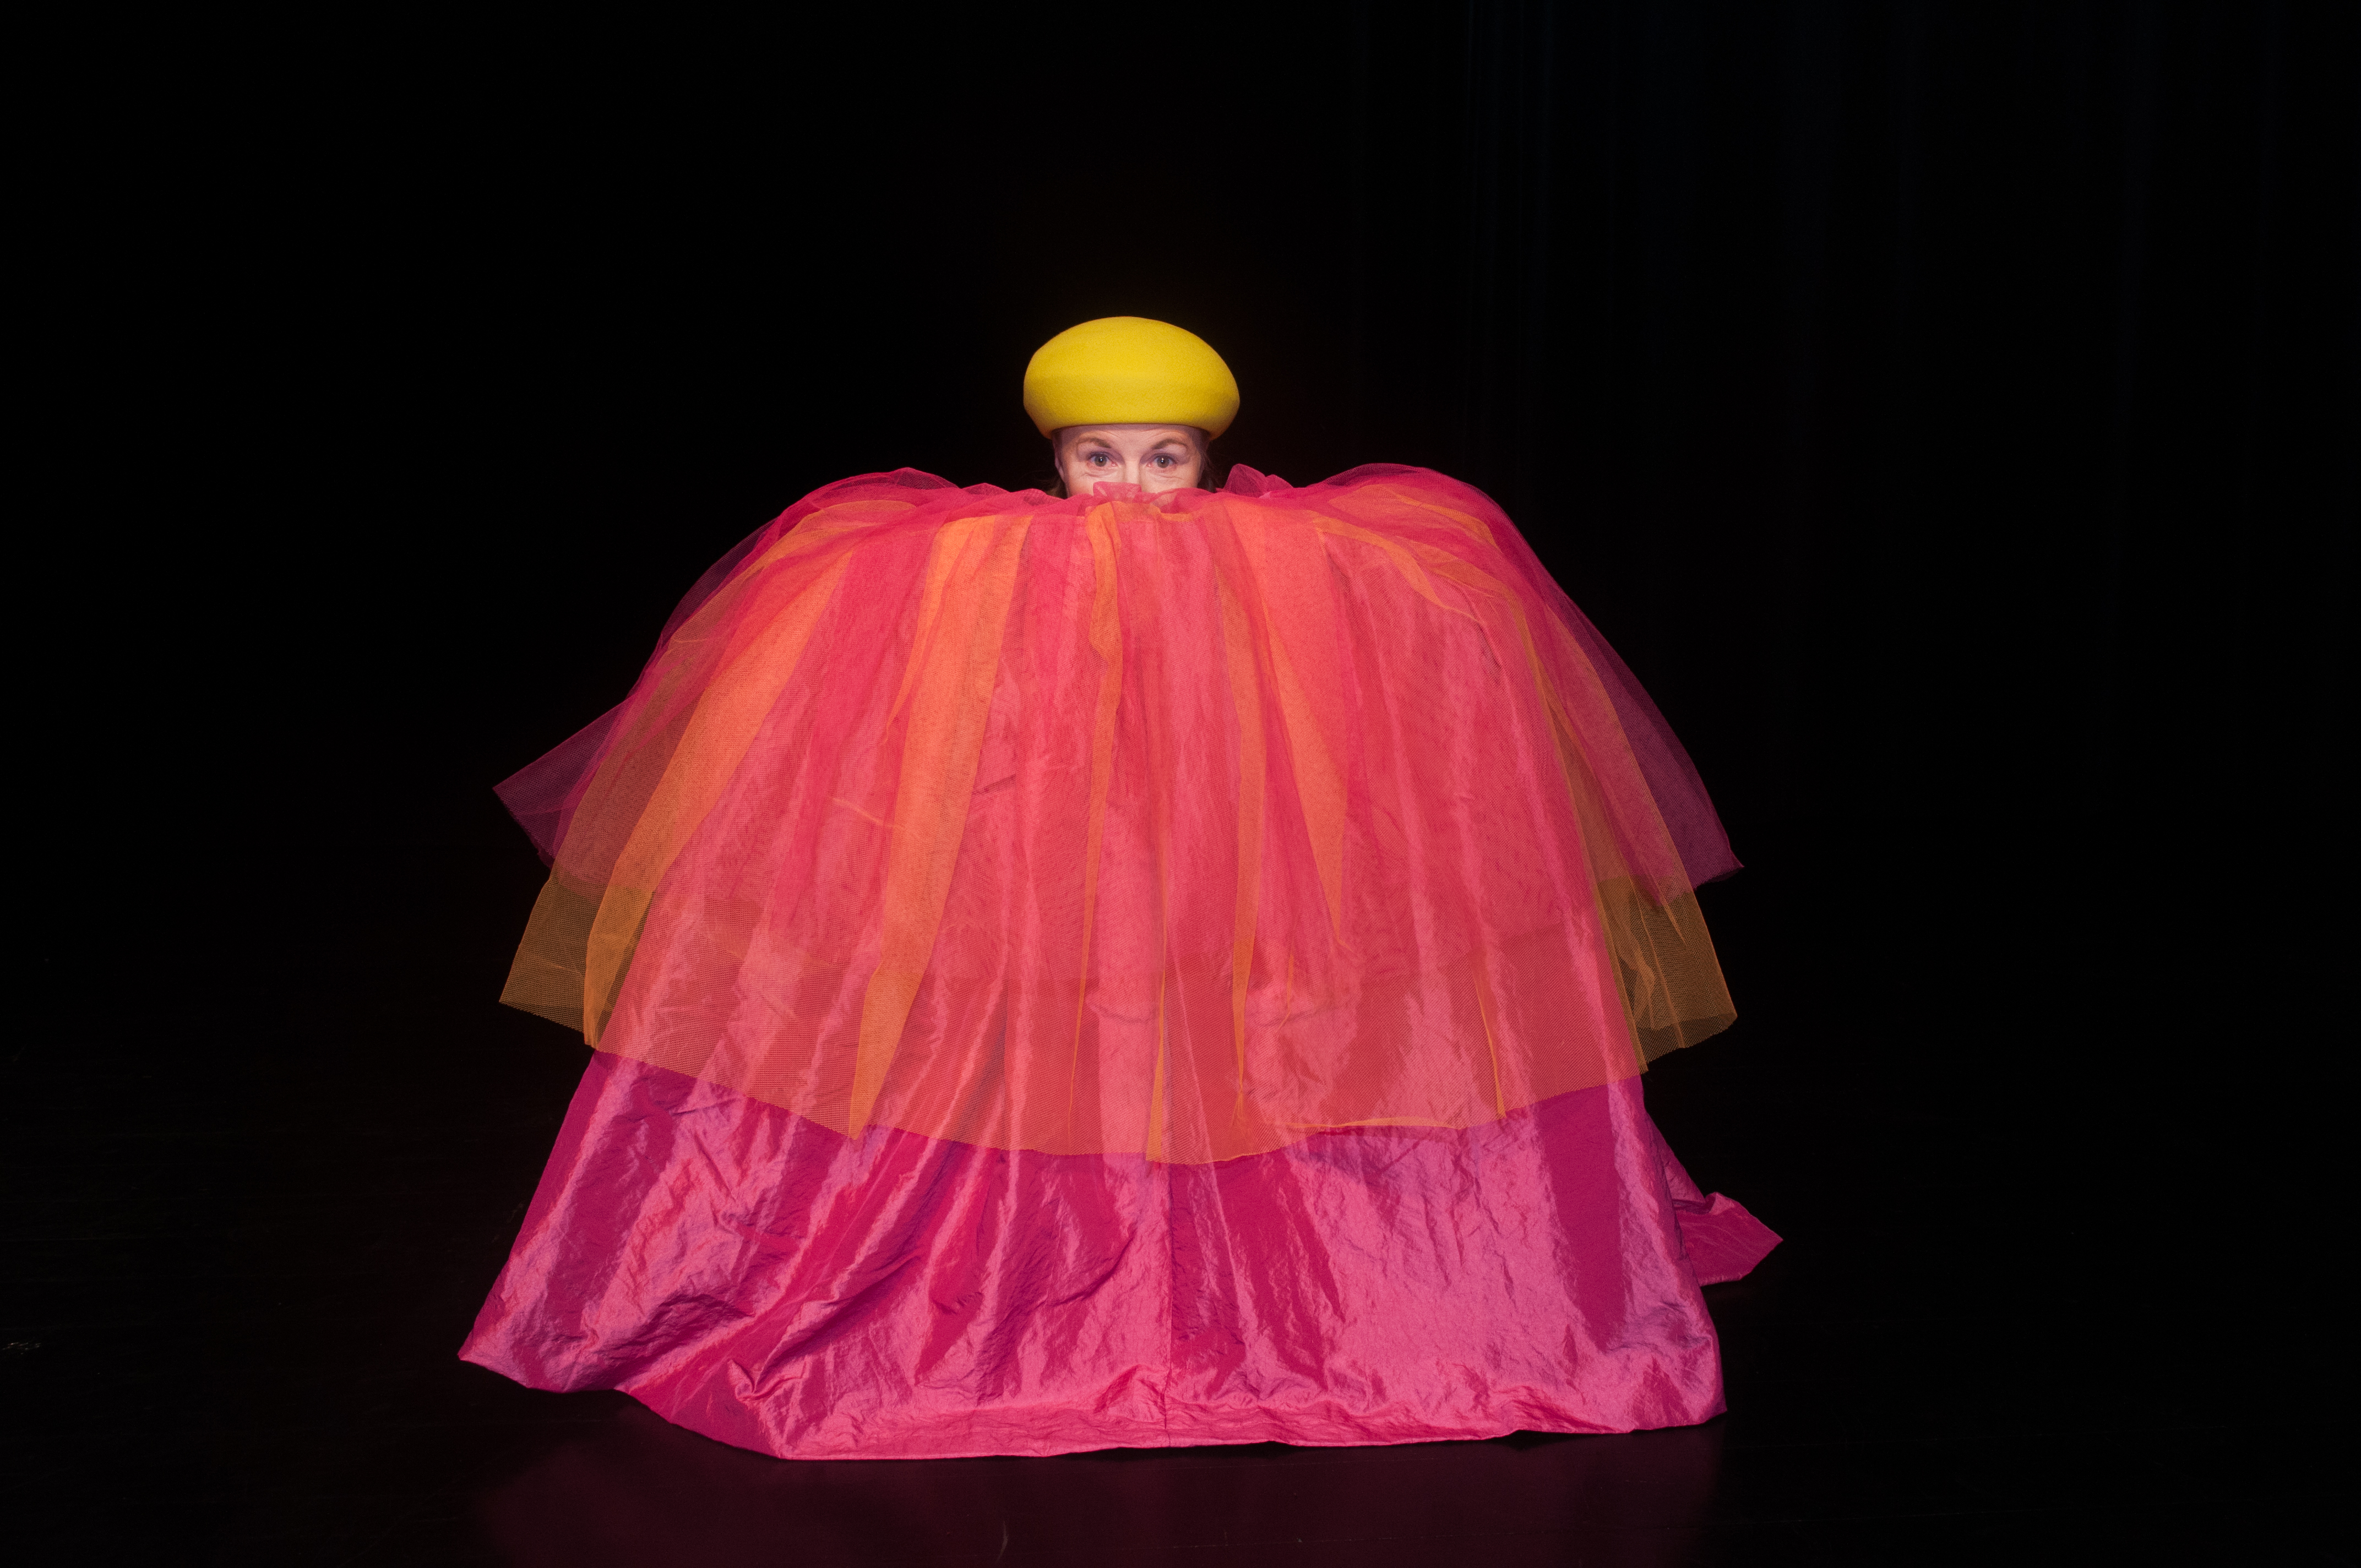 Föreställningsbild, skådespelare i stor rosa klänning och orange mössa